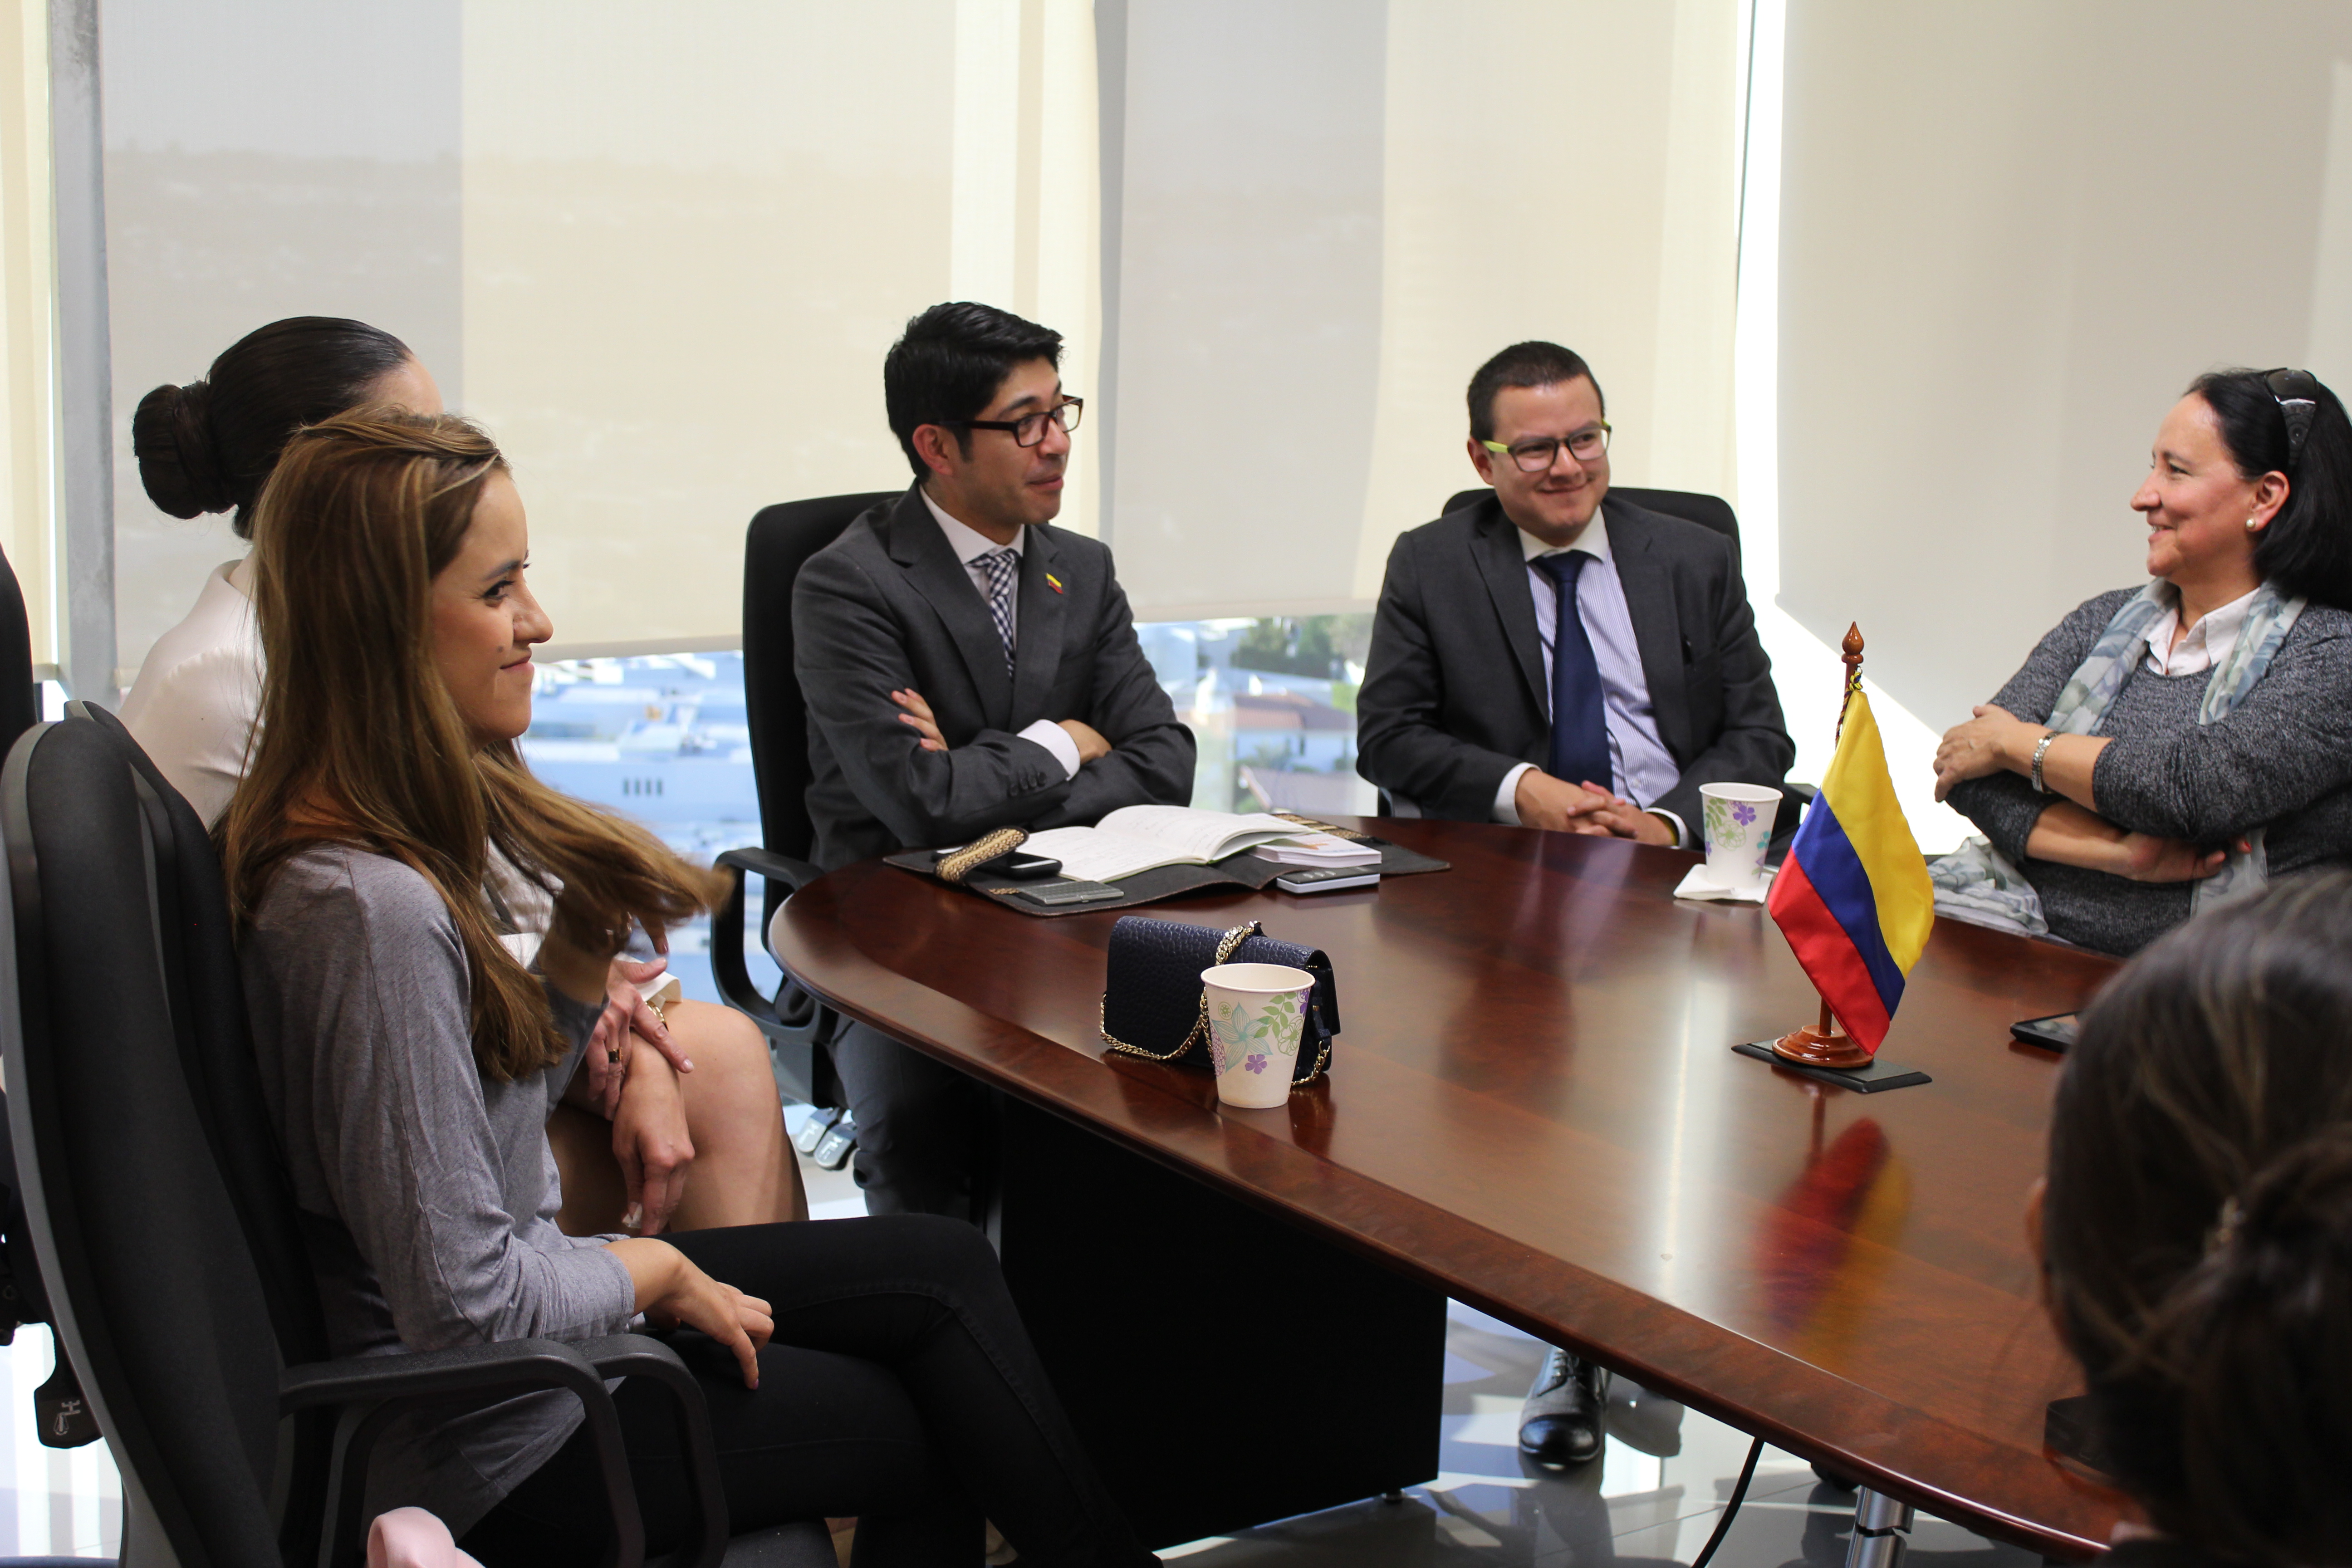 Consulado de Colombia abre las puertas de sus instalaciones y presenta sus servicios a la comunidad colombiana